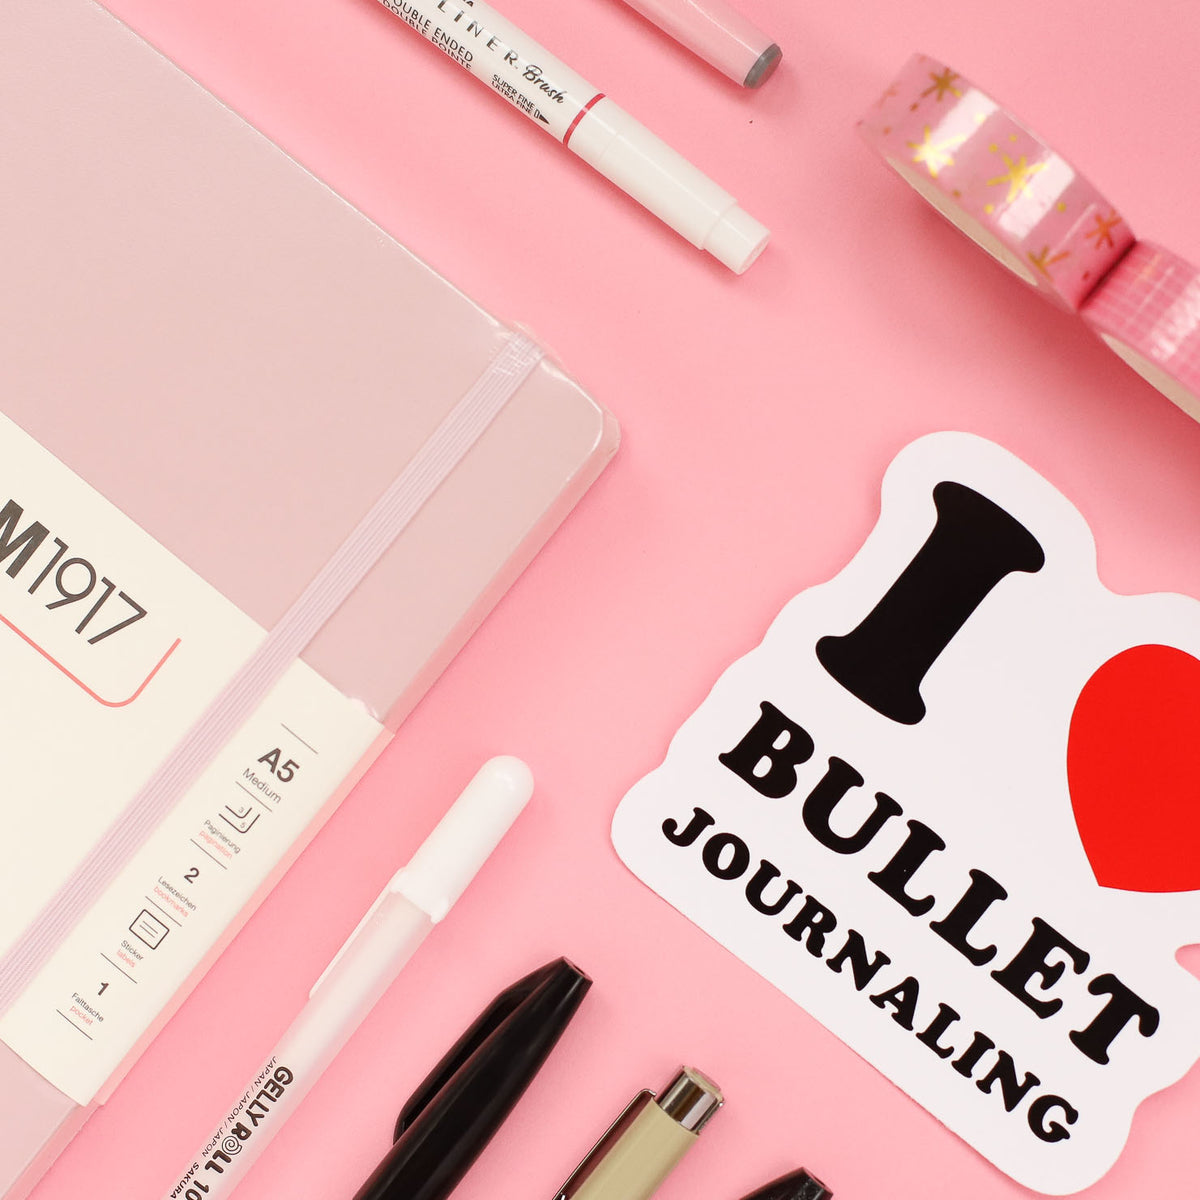 Bullet Journal Supplies: All the Best Bullet Journal Essentials For  Beginners ⋆ Journal Boss